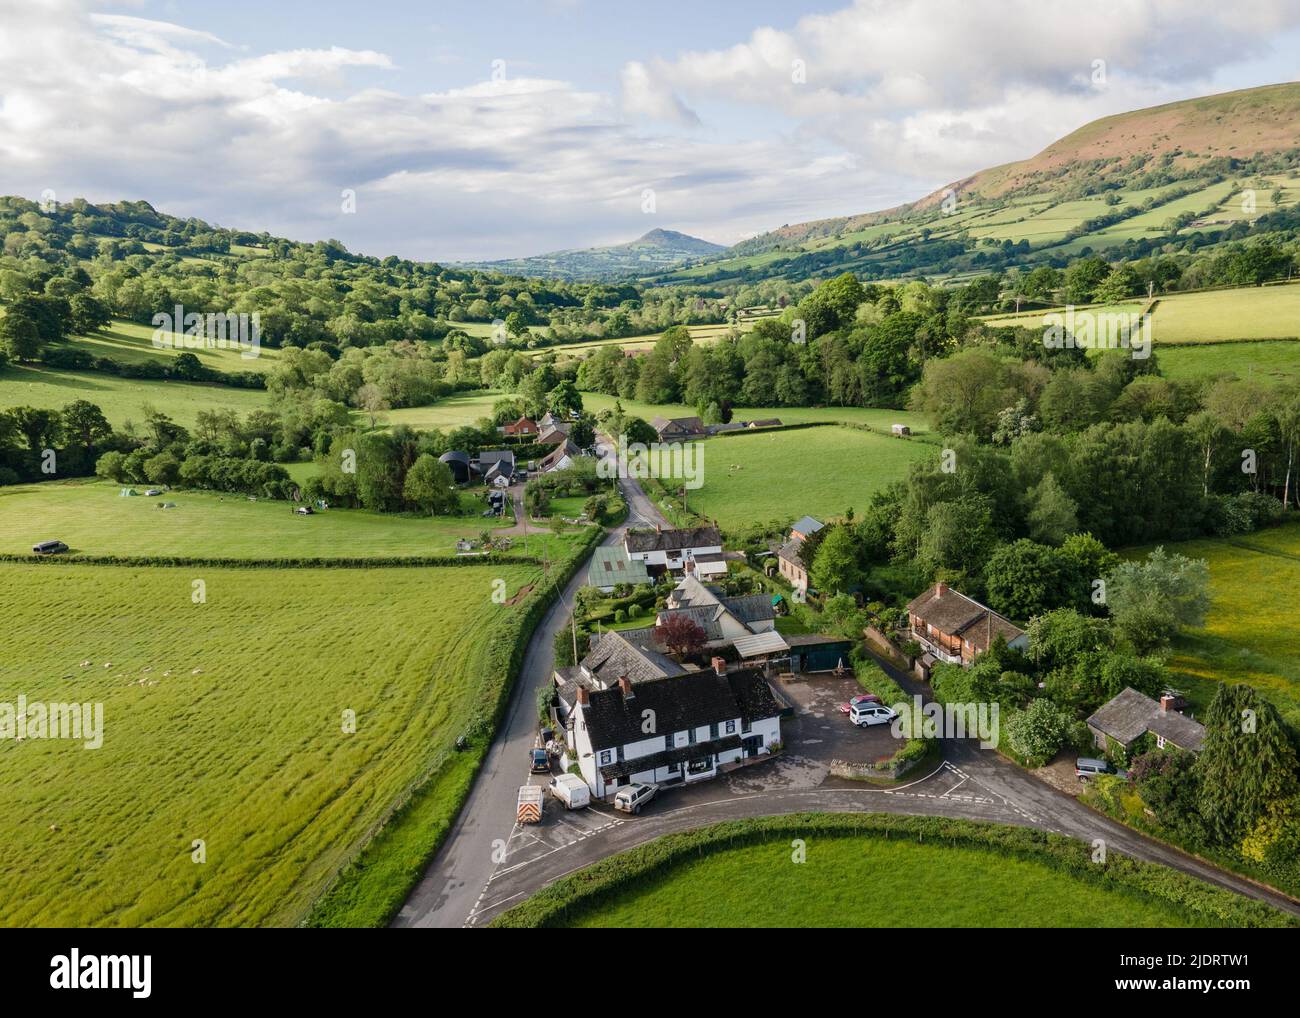 Vista aérea de un pub inglés rural en Herefordshire, en la frontera con Inglaterra, Gales, Reino Unido Foto de stock